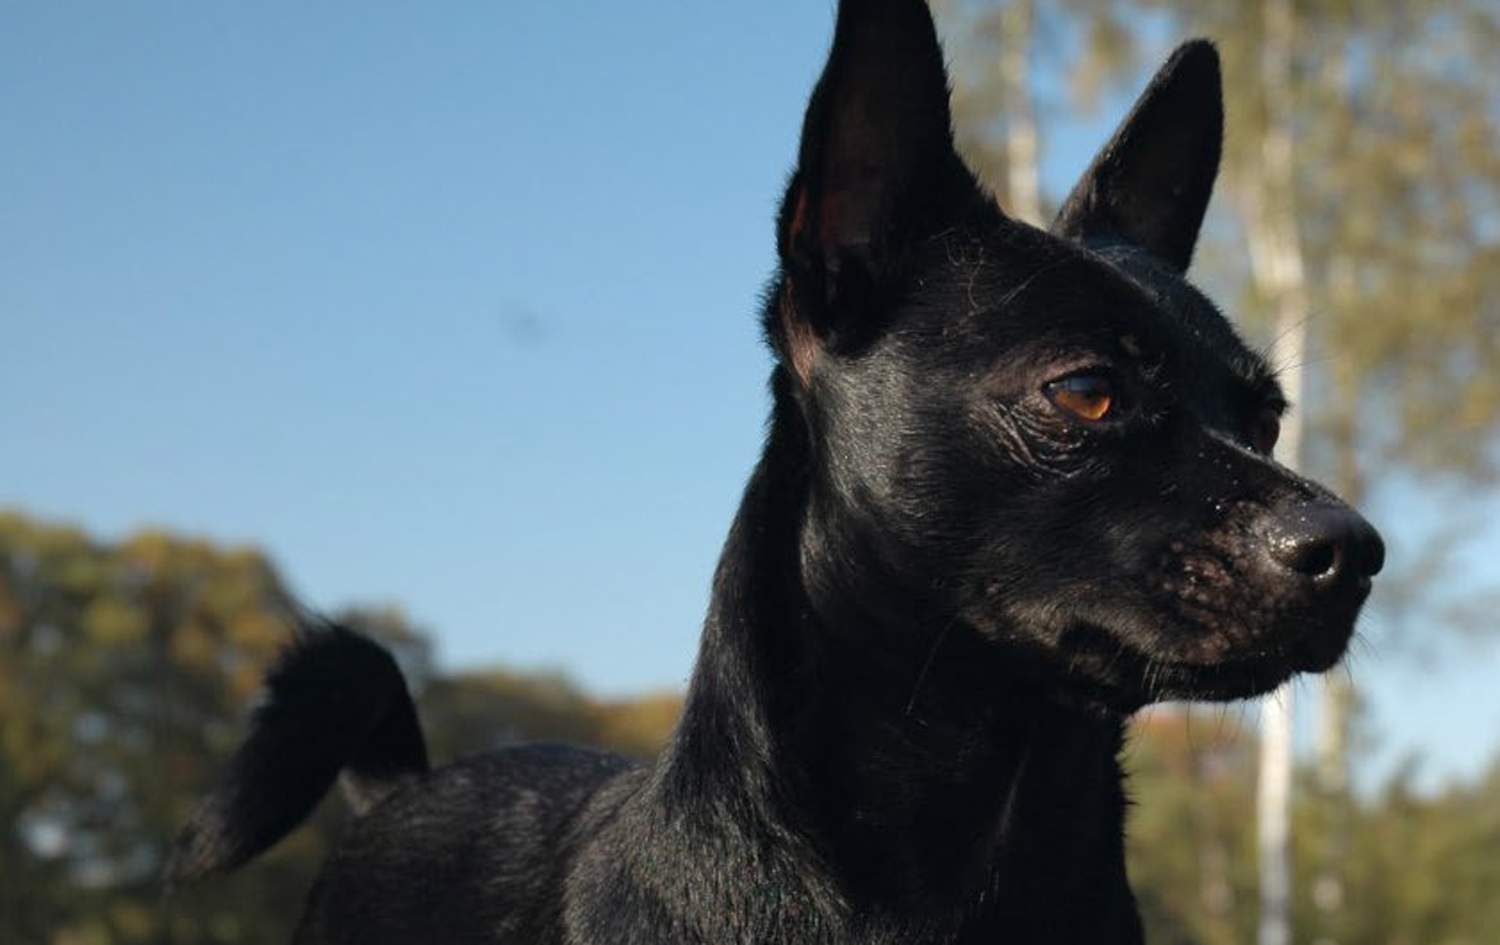 Persoon belast met sportgame terrorist Trekken Blaasstenen bij de hond - Wagenrenk